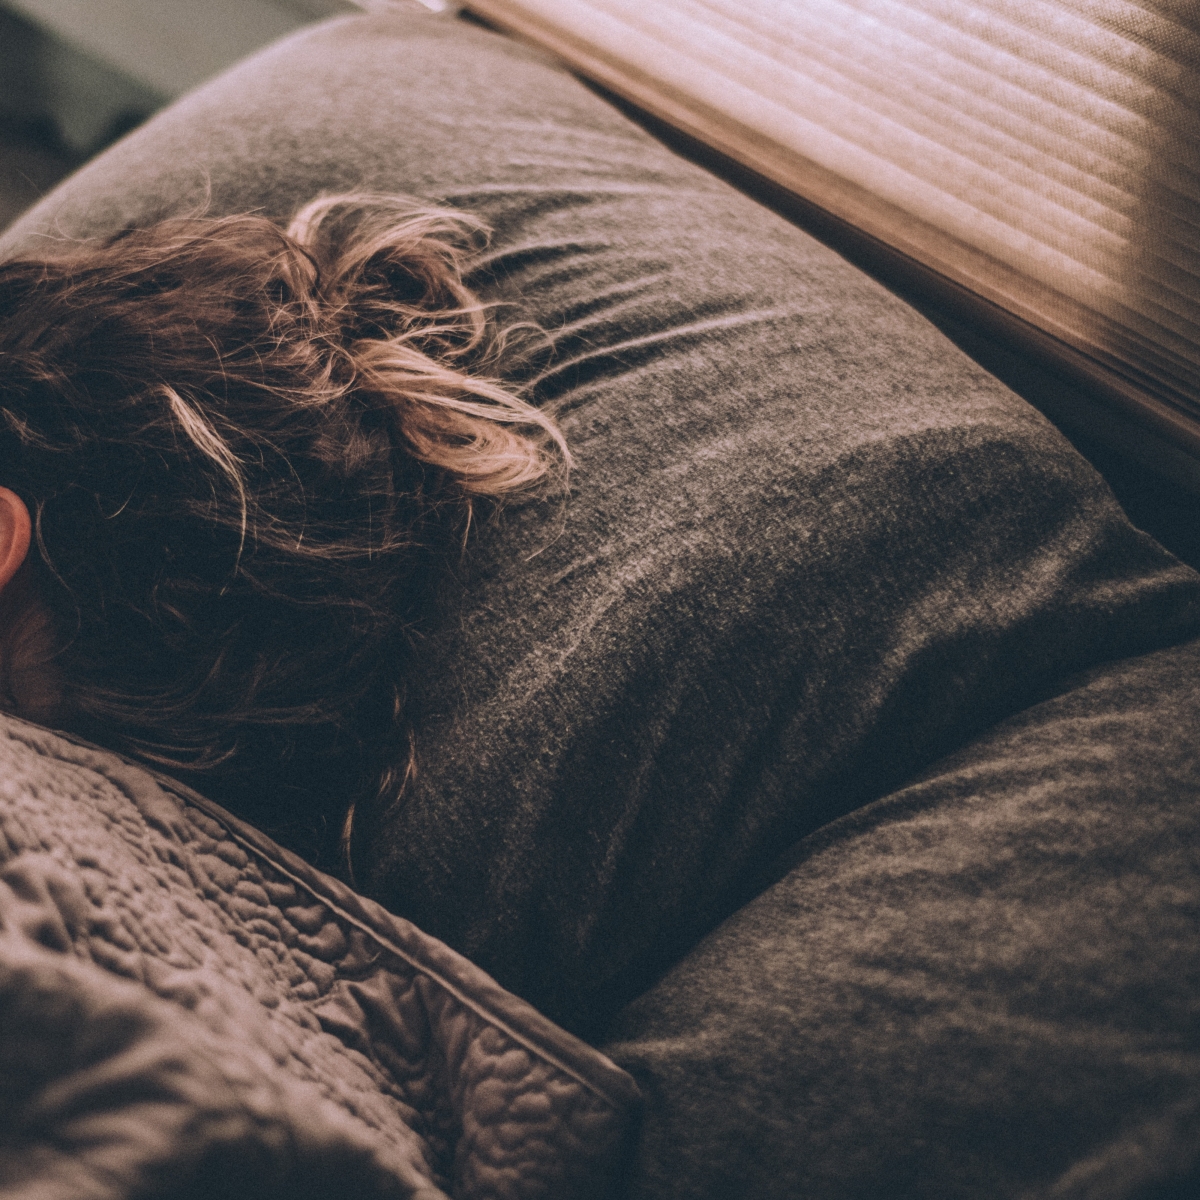 Κοιμήσου σαν πουλάκι: Εύκολοι τρόποι για να αντιμετωπίσεις την αϋπνία